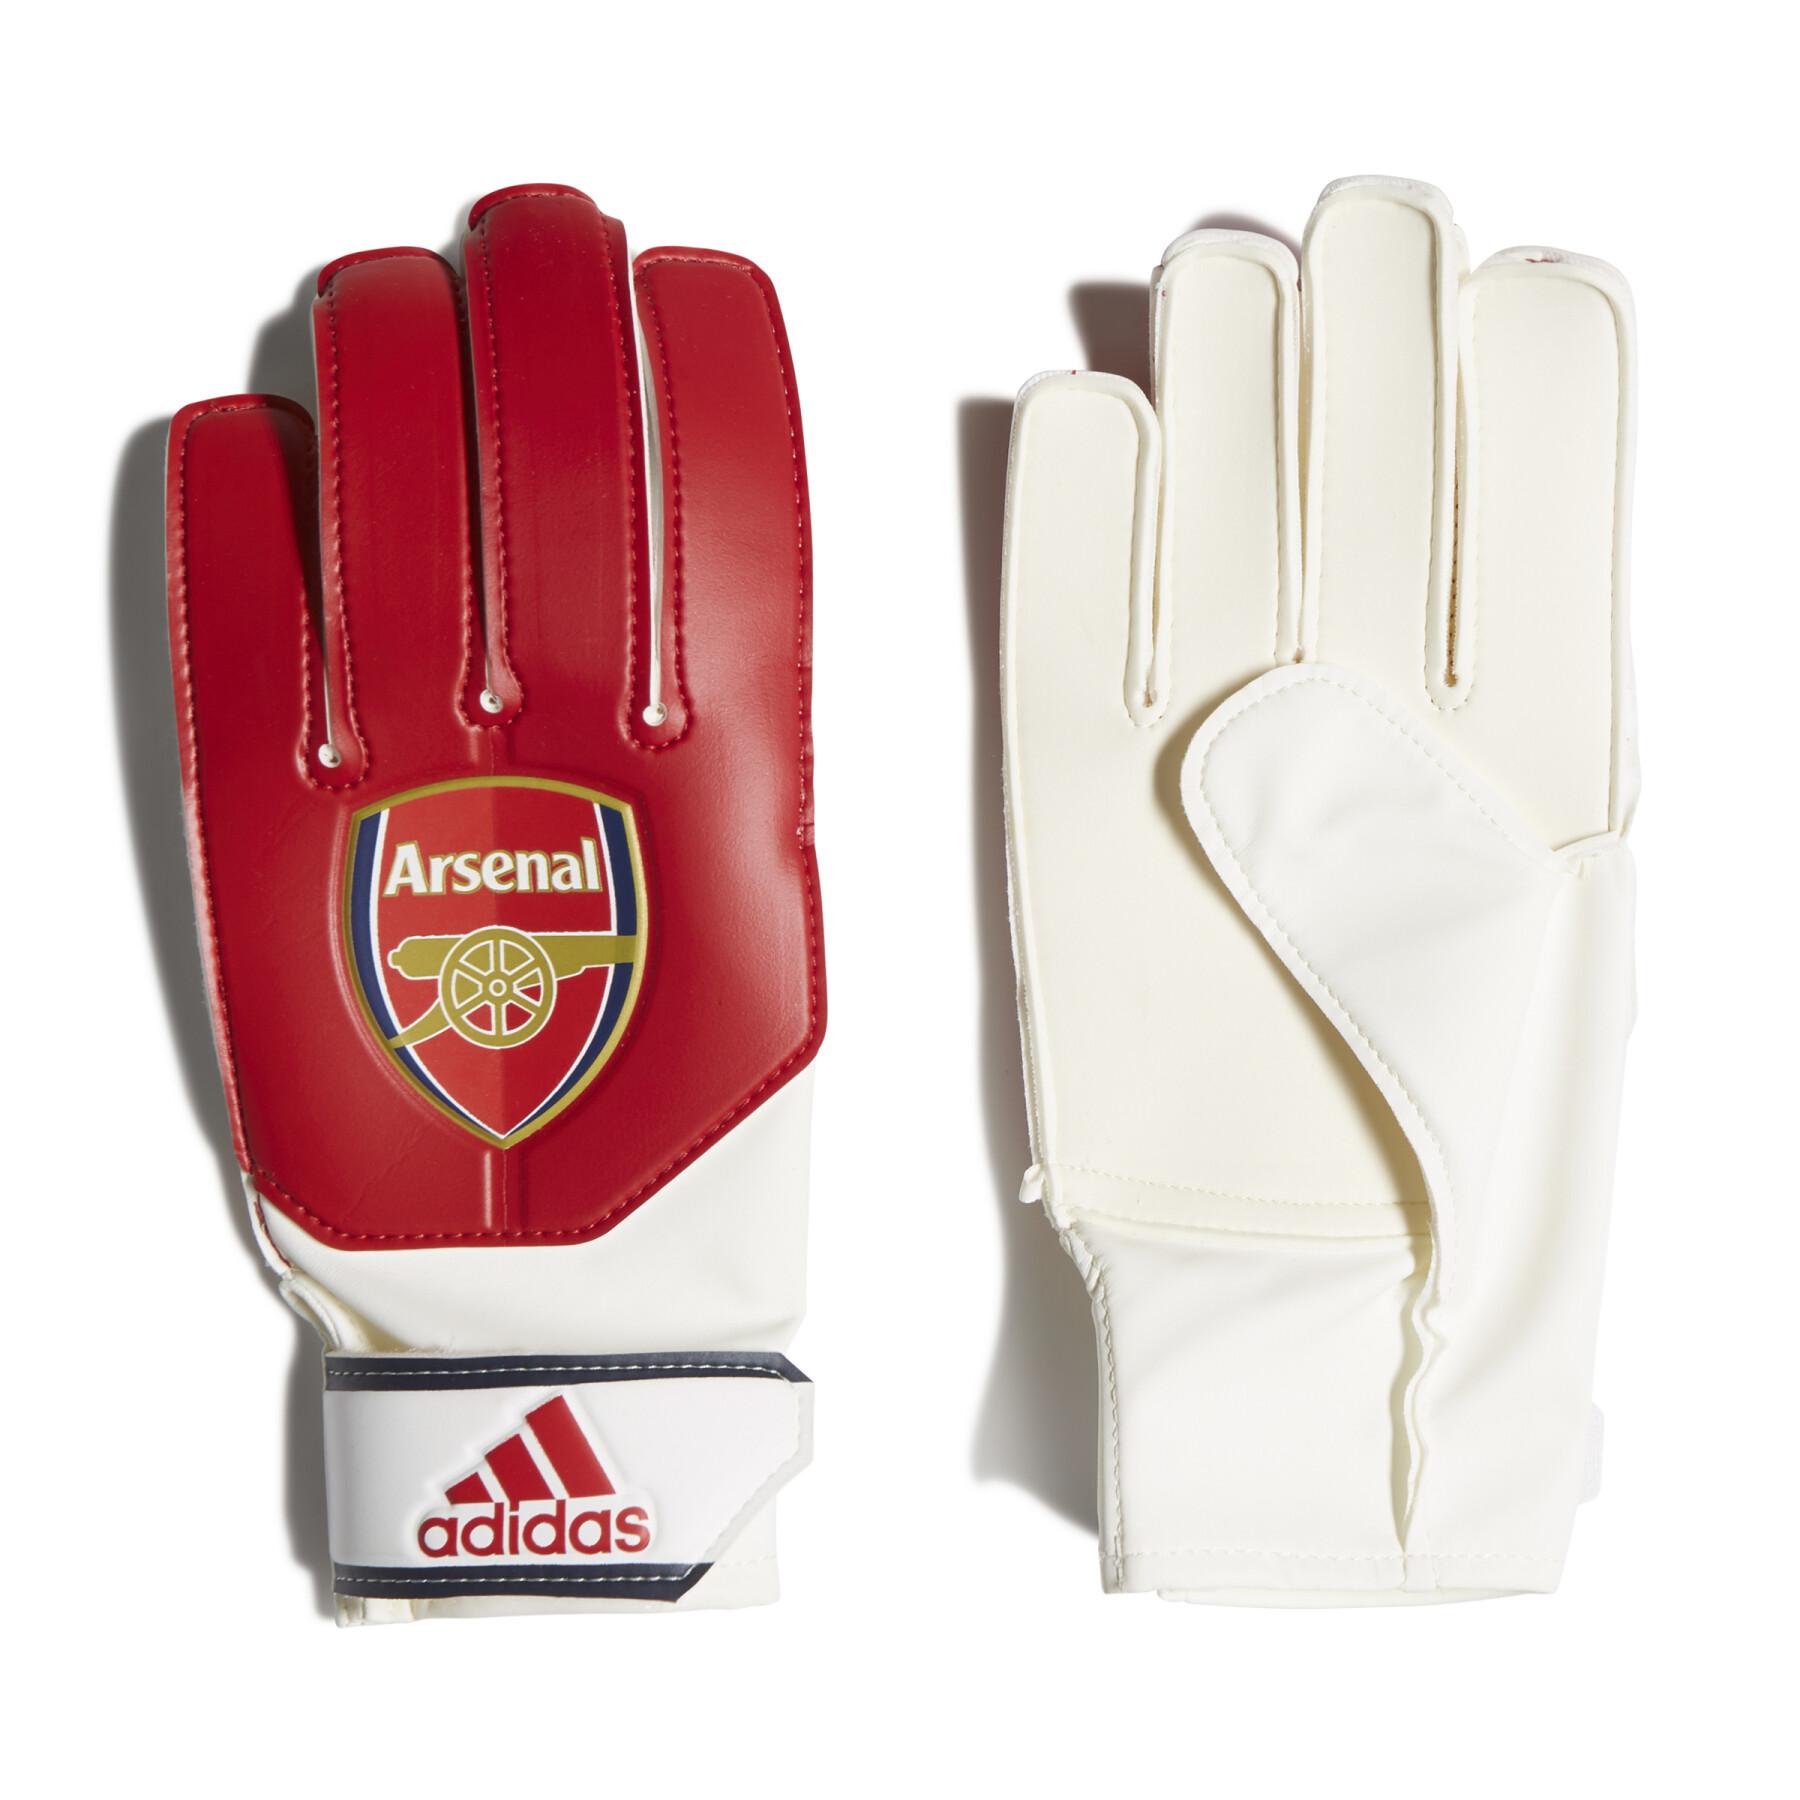 Children's goalie gloves Arsenal